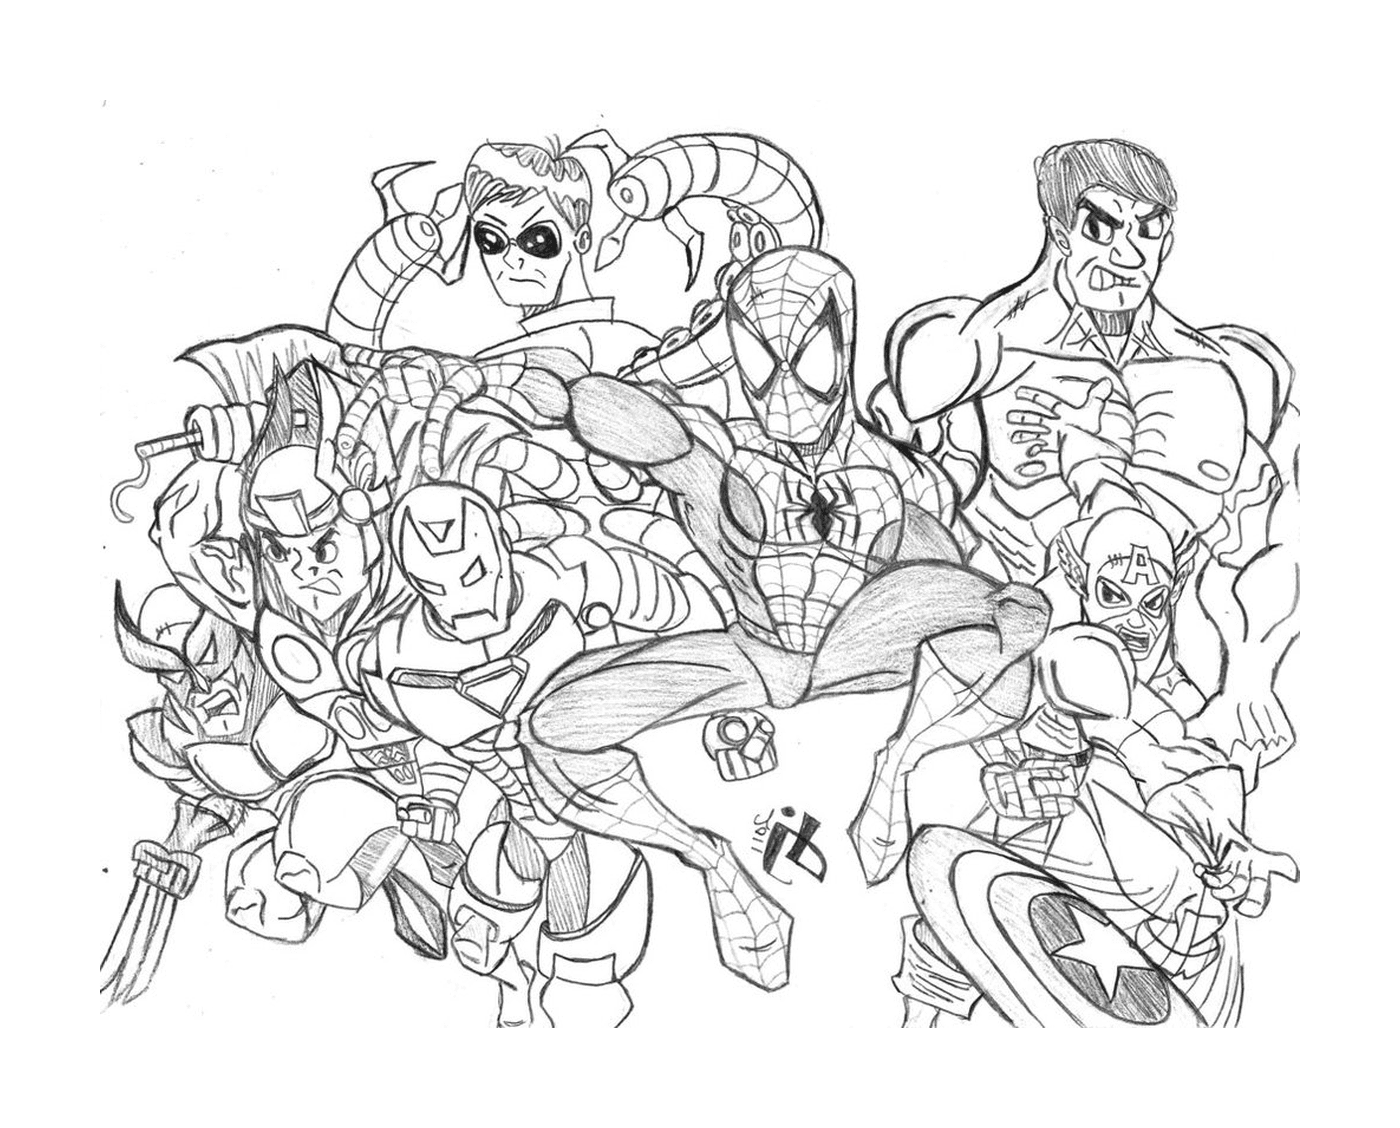  Un gruppo di supereroi disegnati 